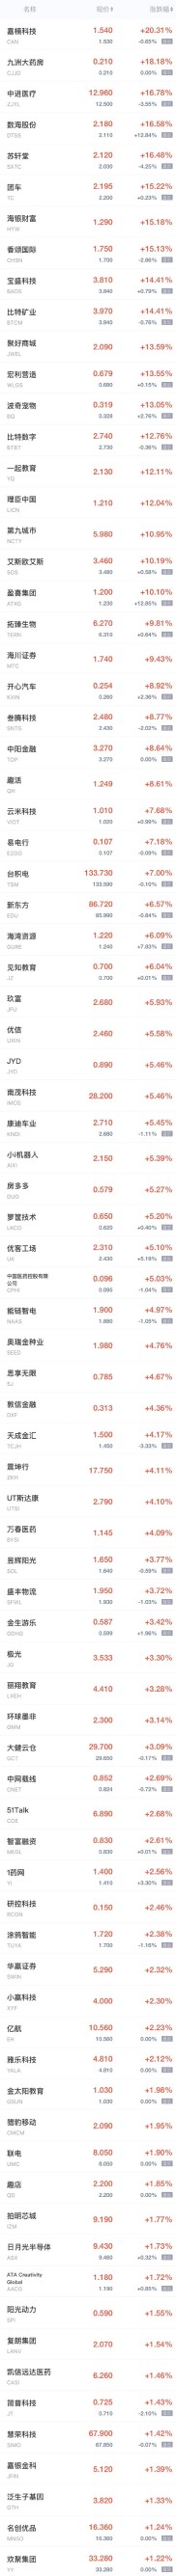 周四热门中概股普跌 京东跌超4%，阿里巴巴跌超3%，唯品会、爱奇艺跌超2%